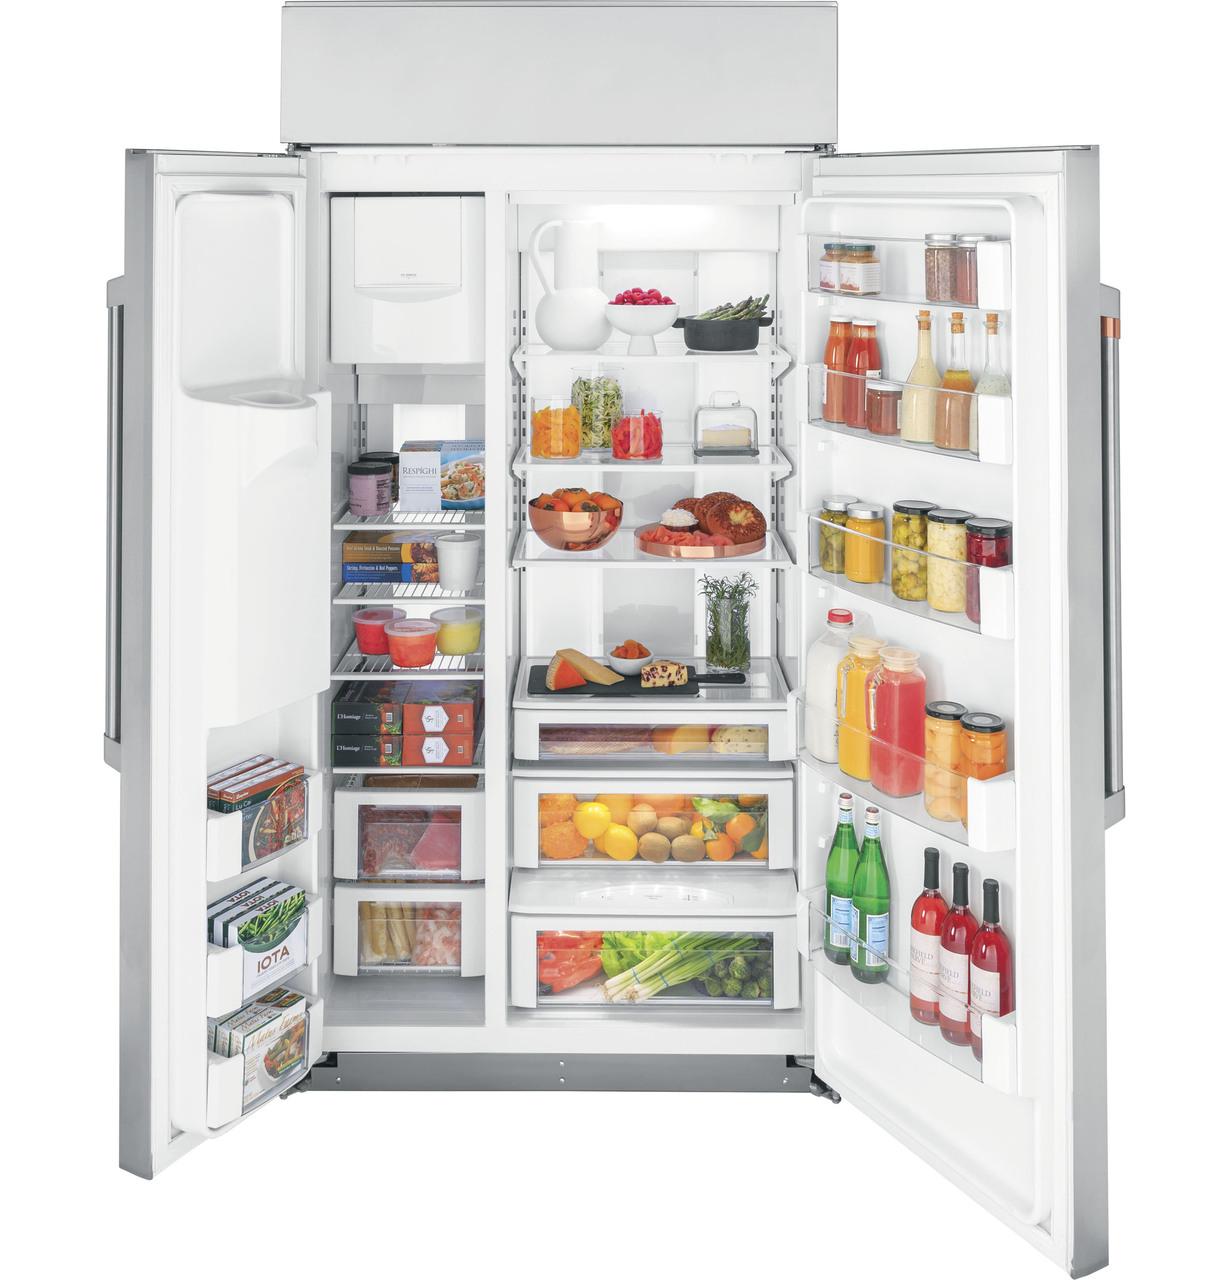 Cafe Caf(eback)™ 42" Smart Built-In Side-by-Side Refrigerator with Dispenser